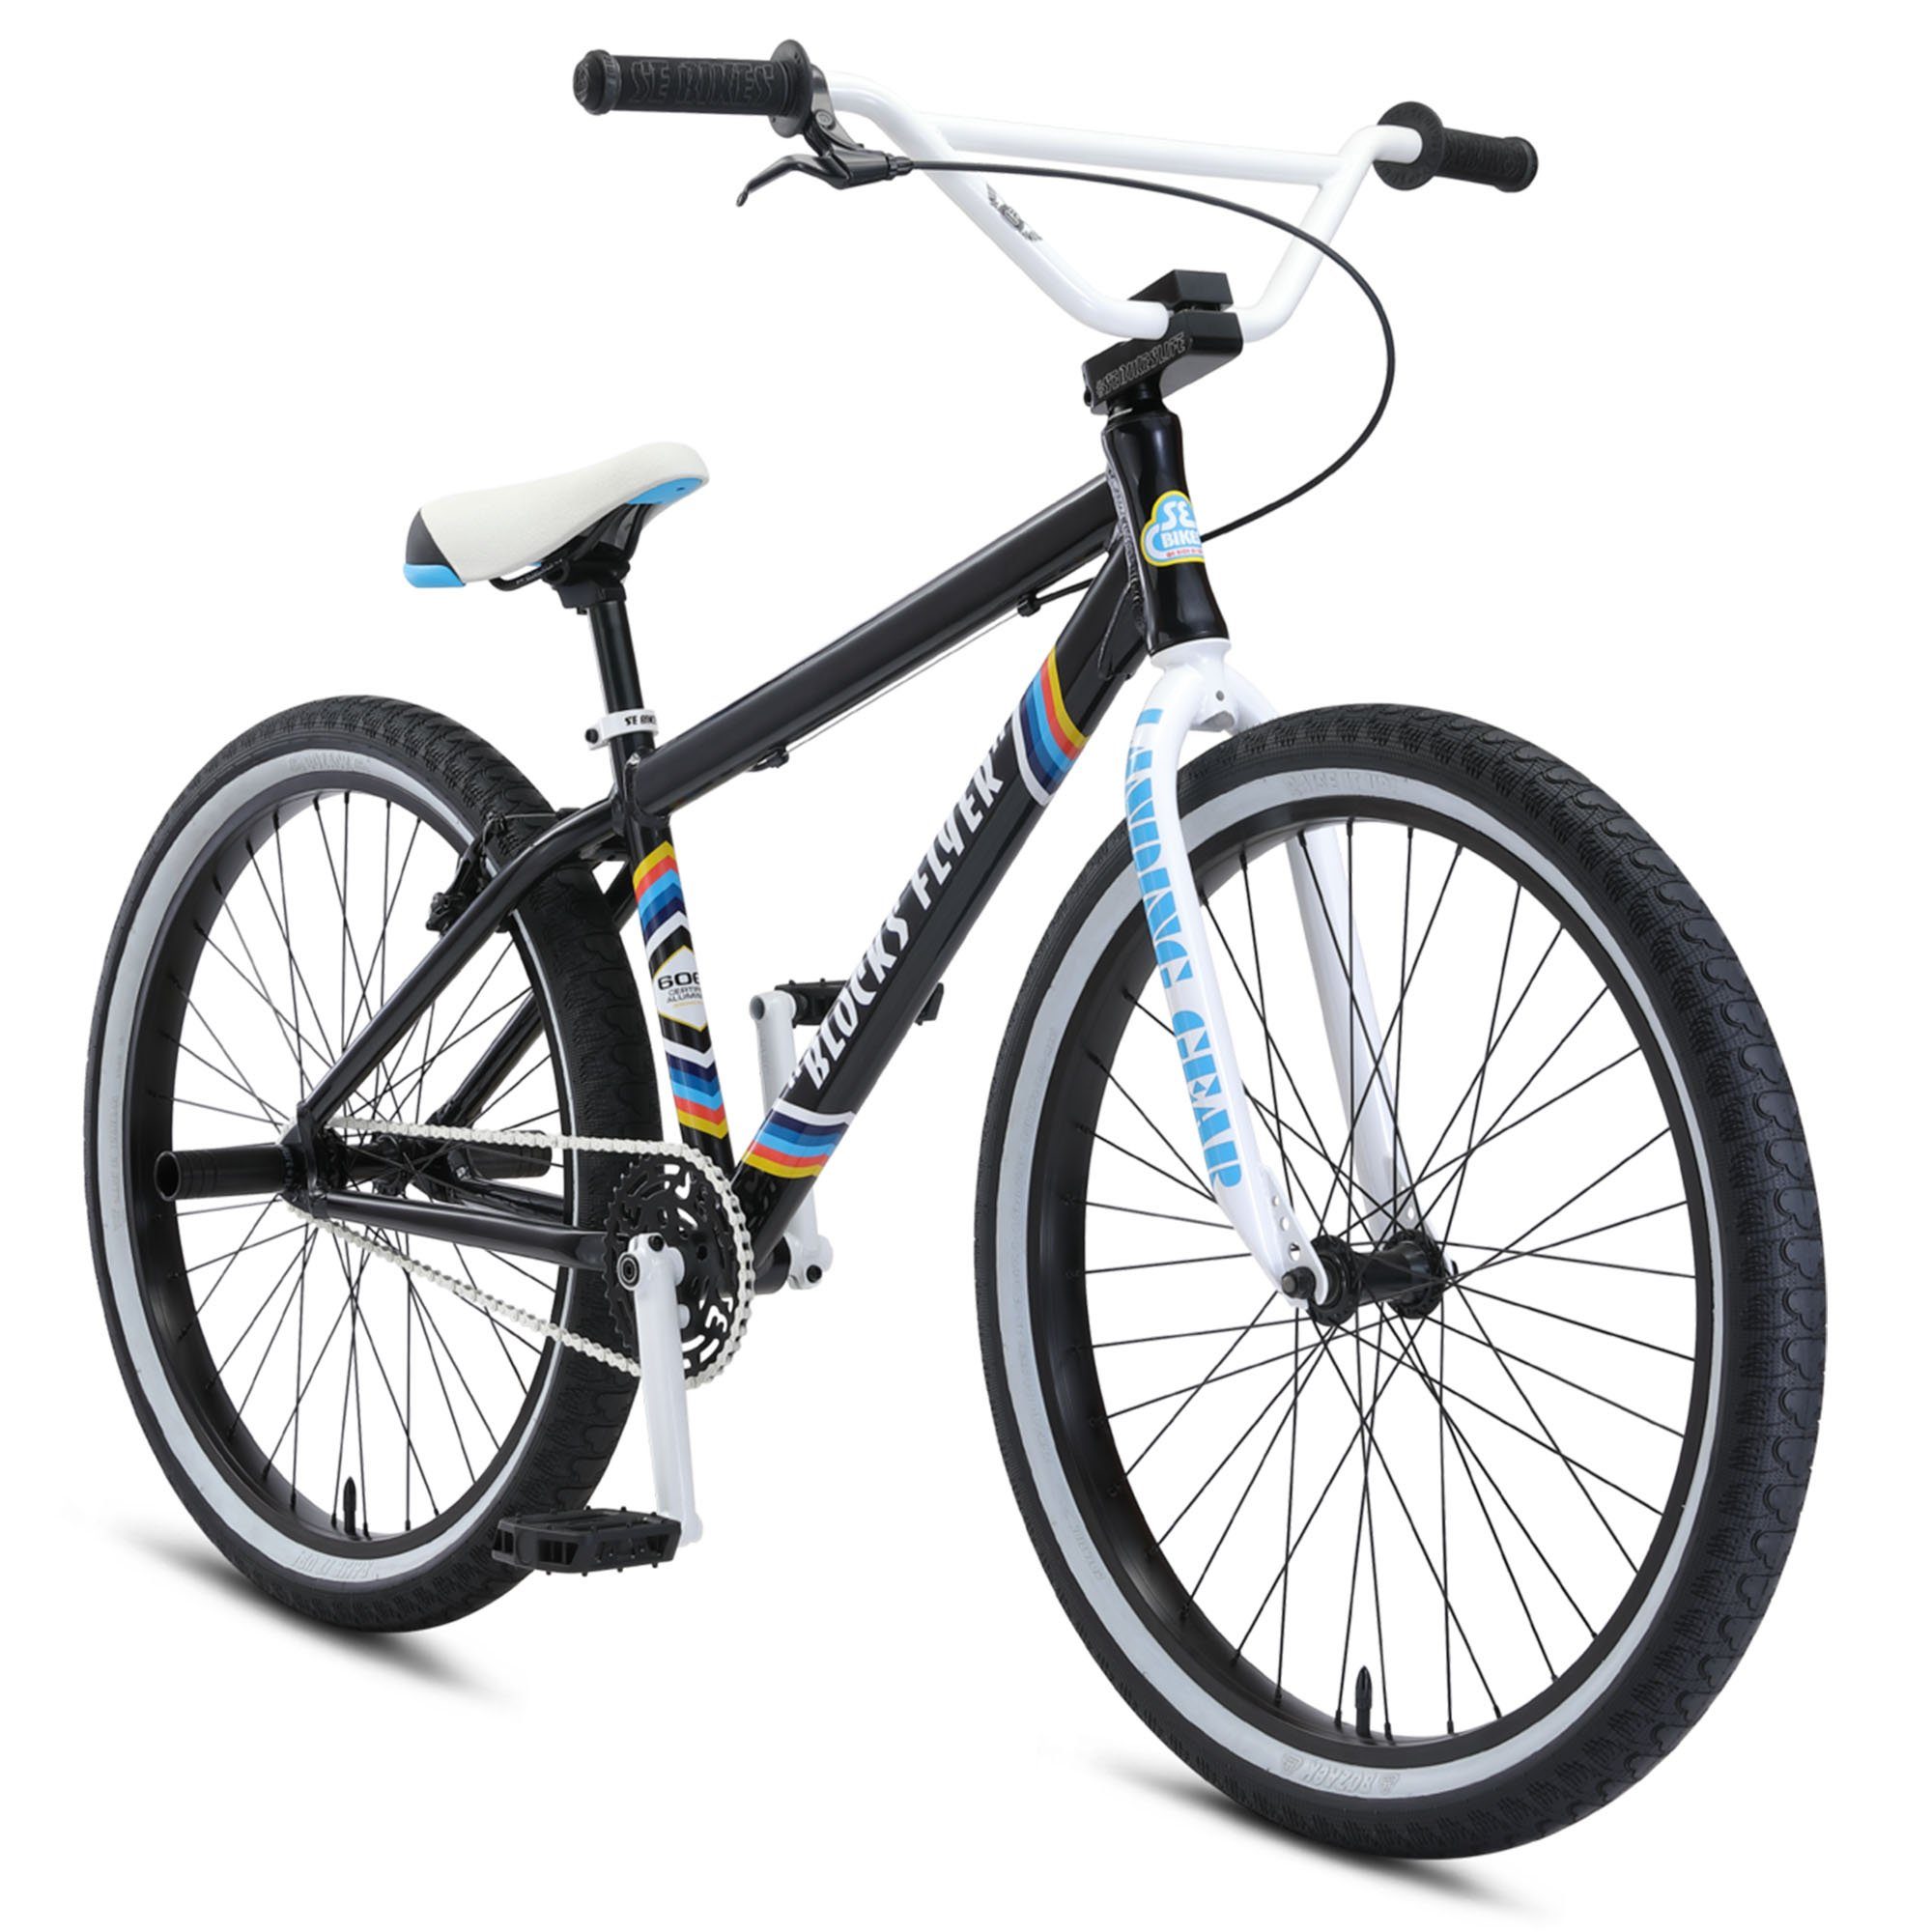 SE Bikes BMX-Rad Blocks Flyer, 1 Gang, ohne Schaltung, Cruiser BMX Fahrrad Singlespeed Bike black sparkle